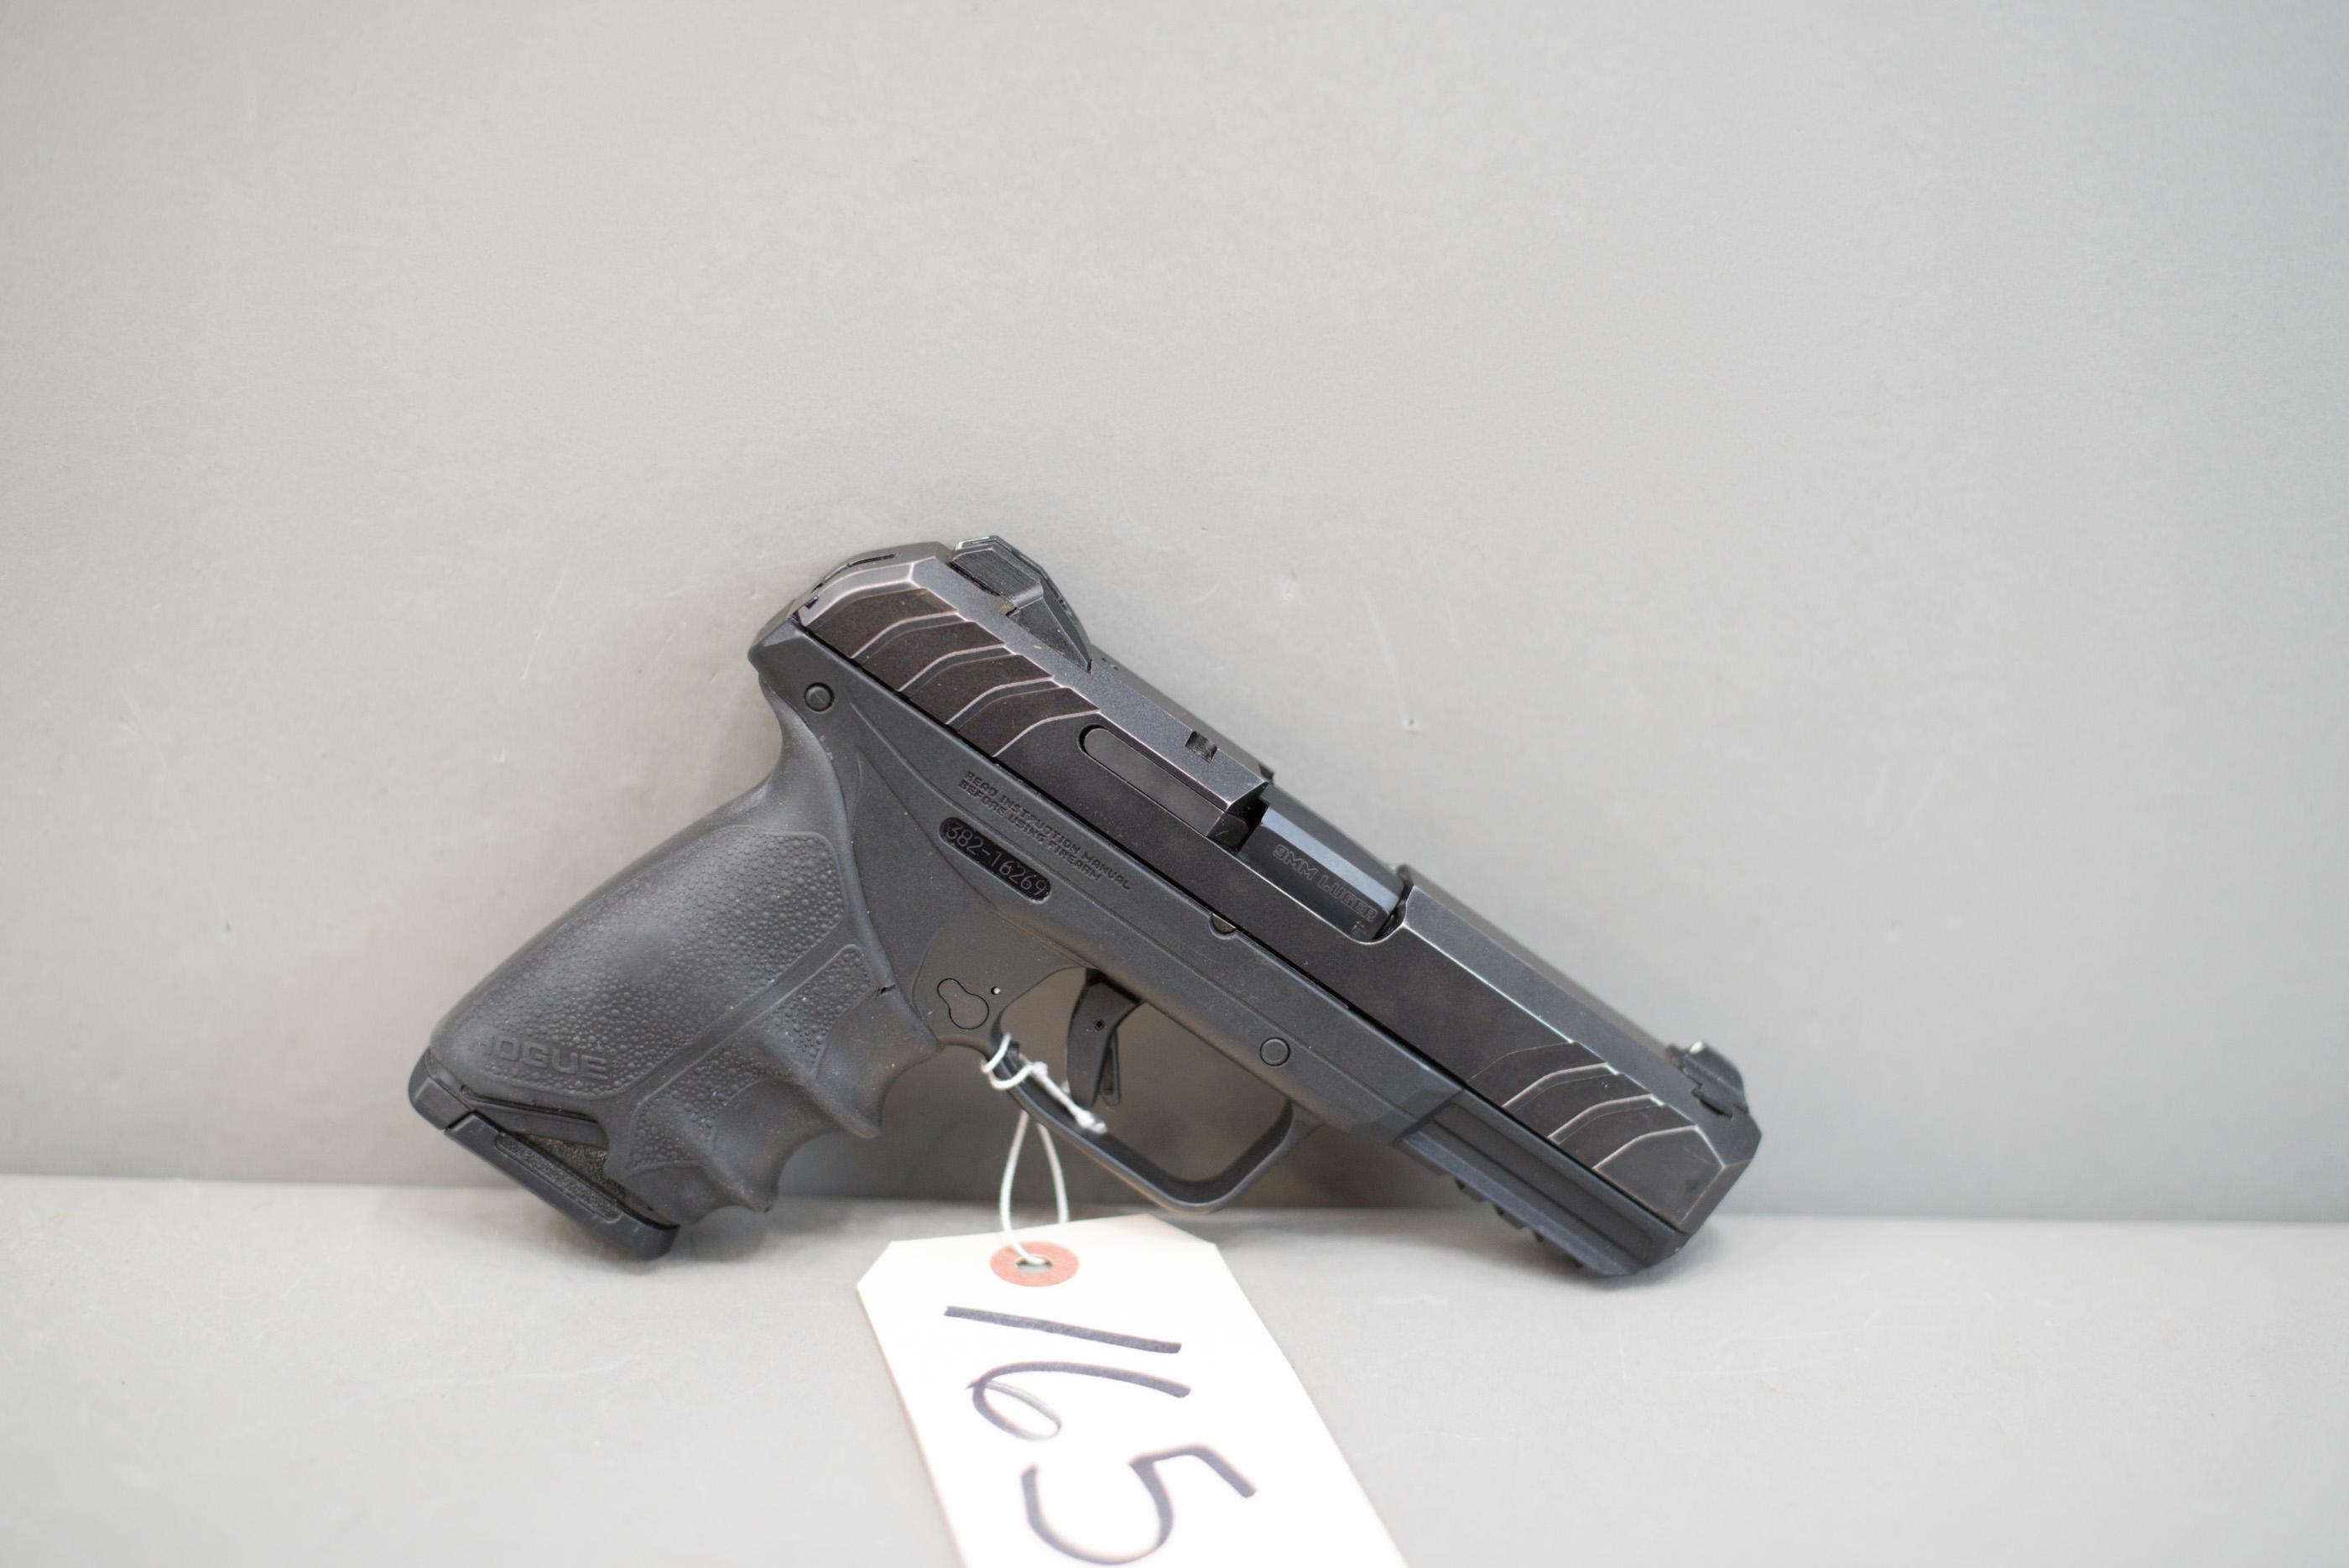 (R) Ruger Security-9 9mm Pistol